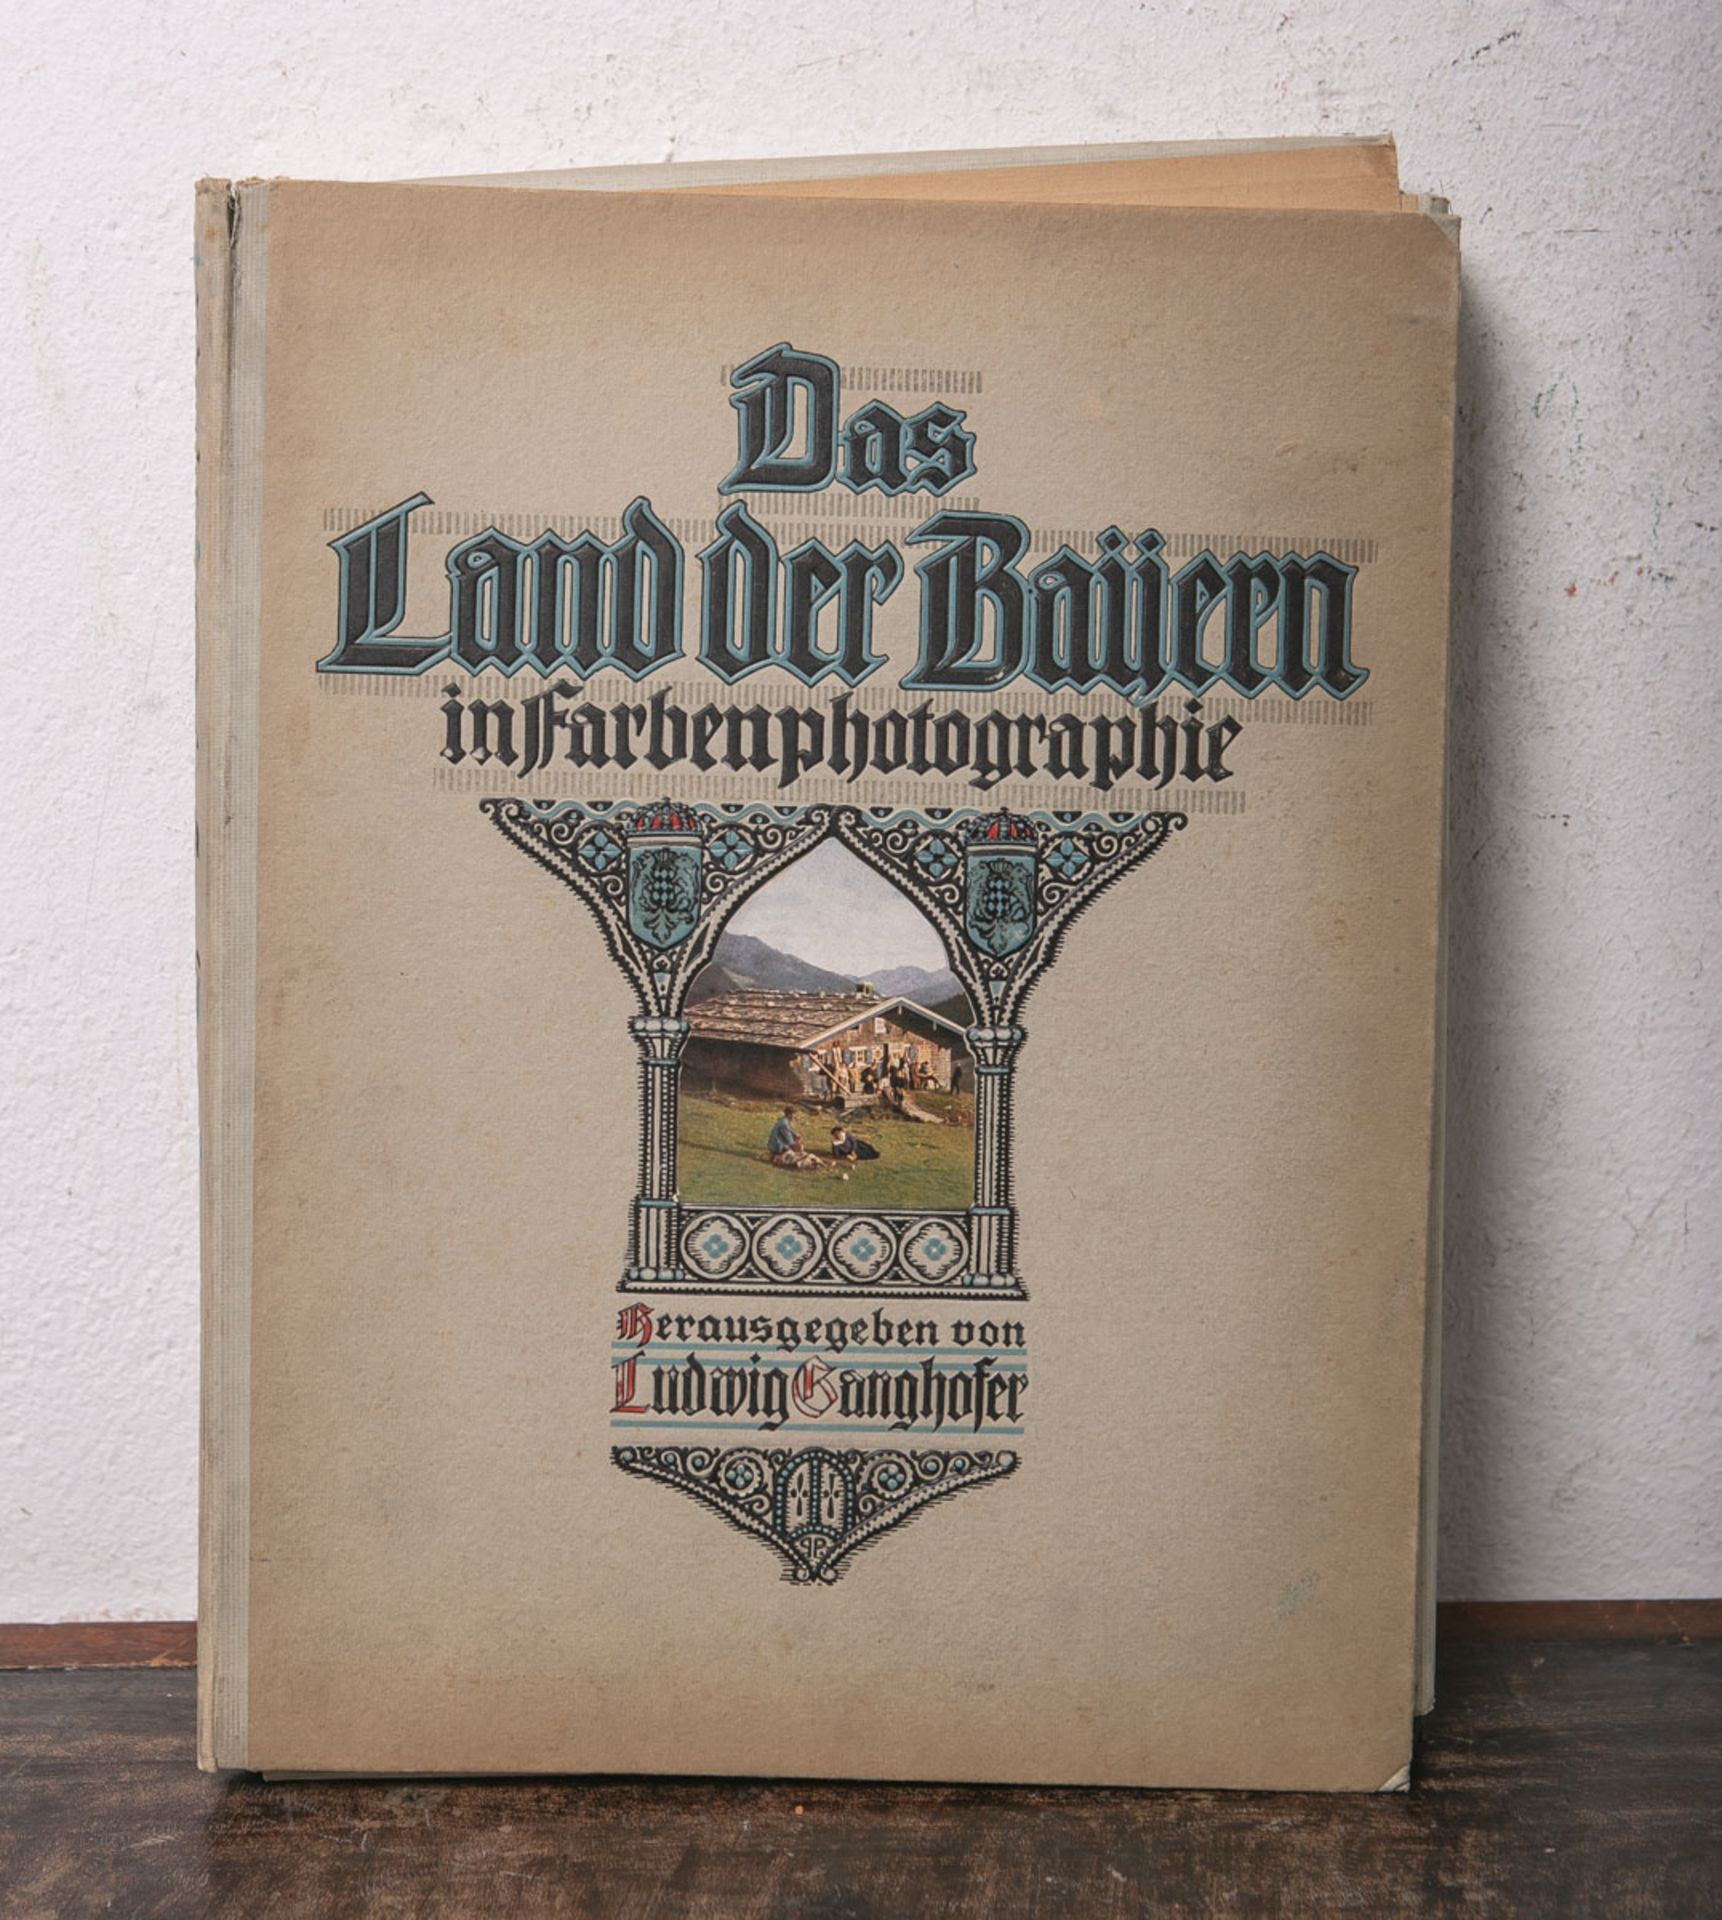 Ganghofer, Ludwig (Hrsg.), "Das Land der Bayern in Farbenphotographie", Band V, Zweiter Band, m.